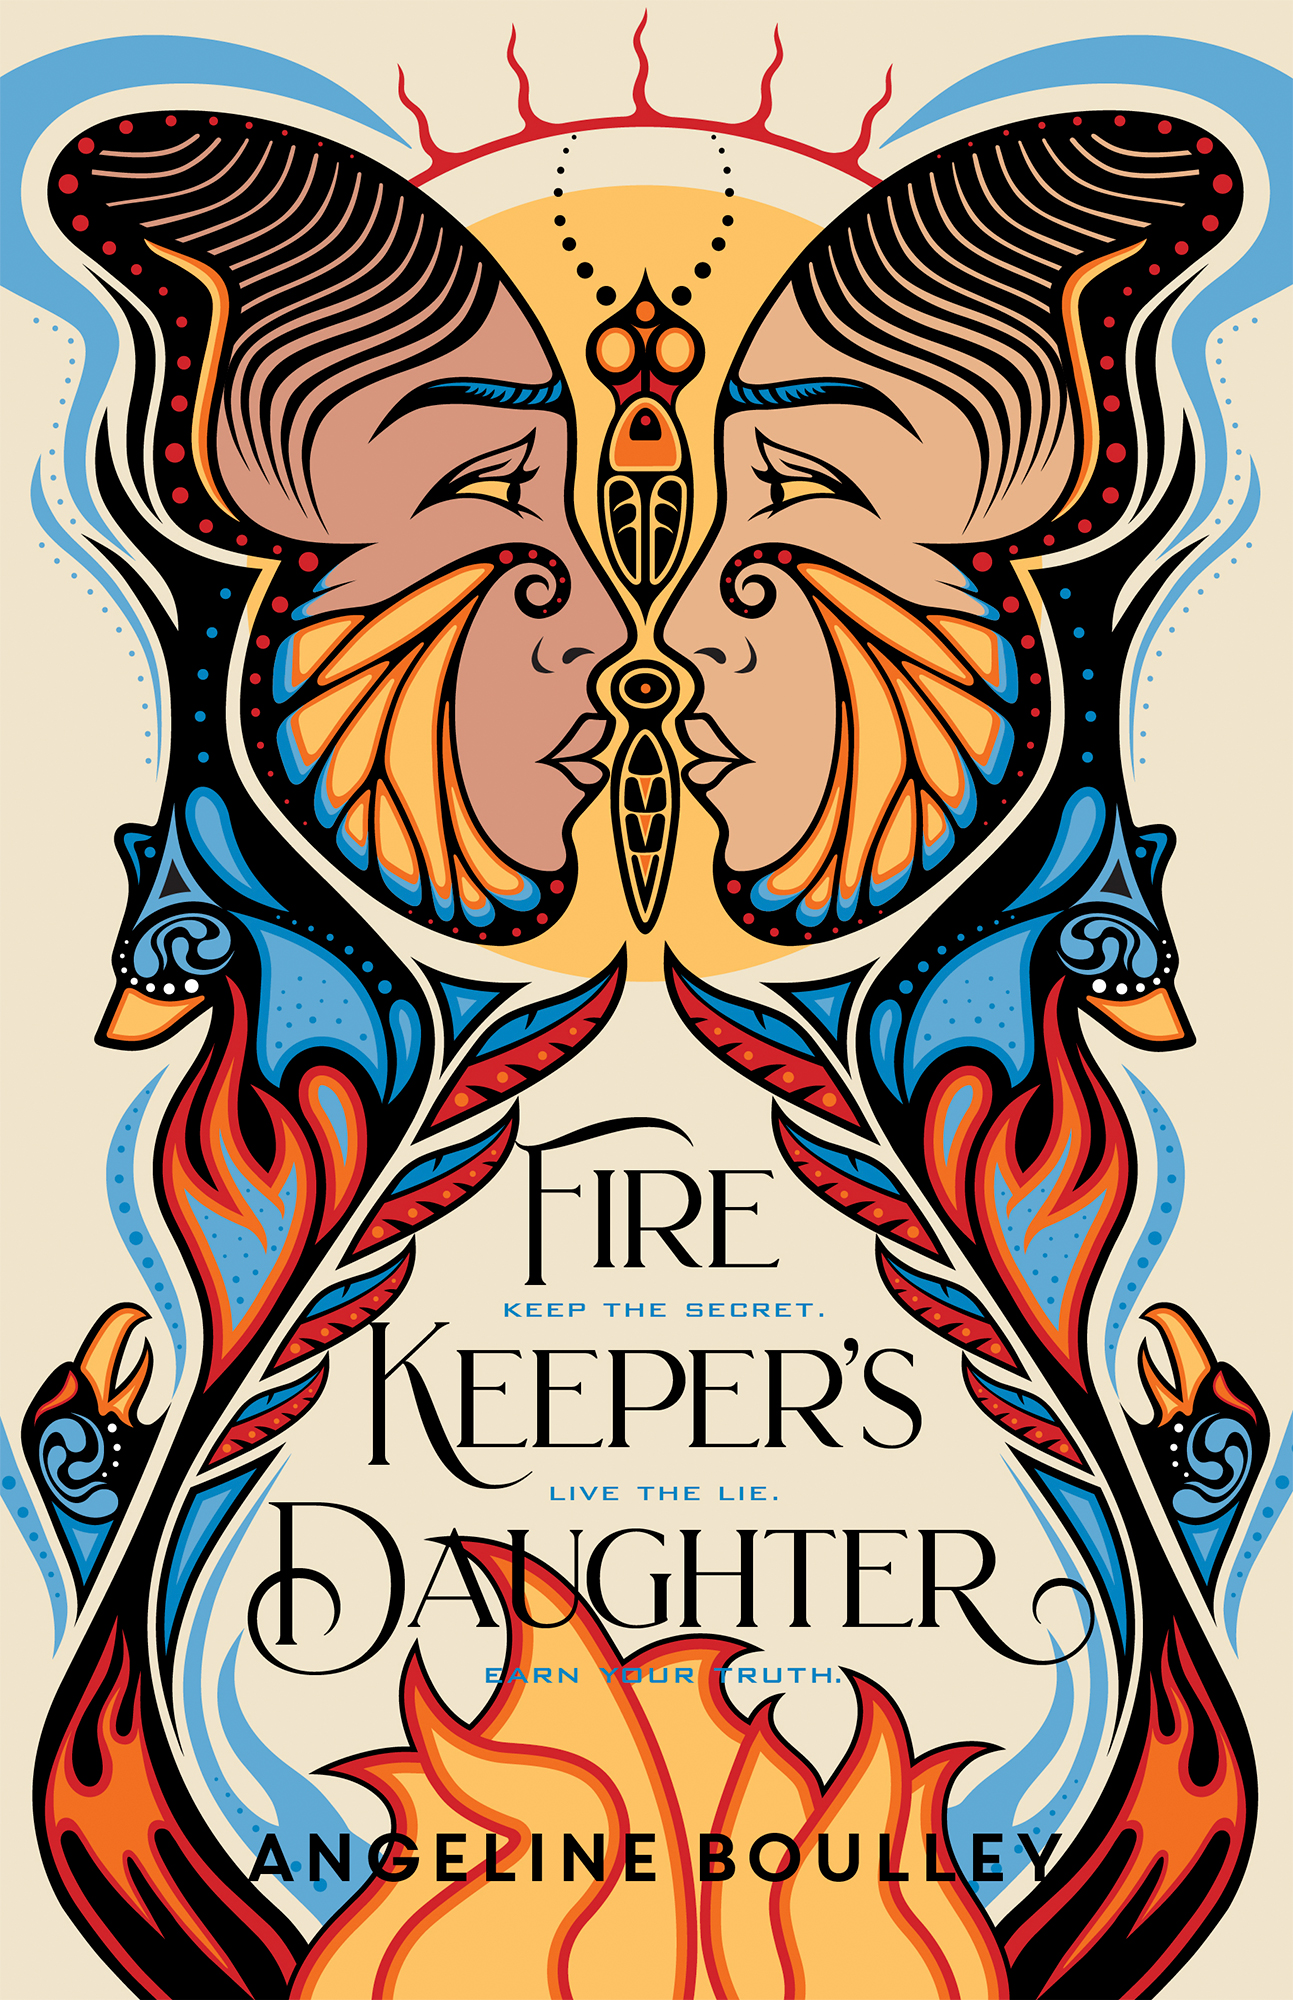 img-firekeepers-daughter